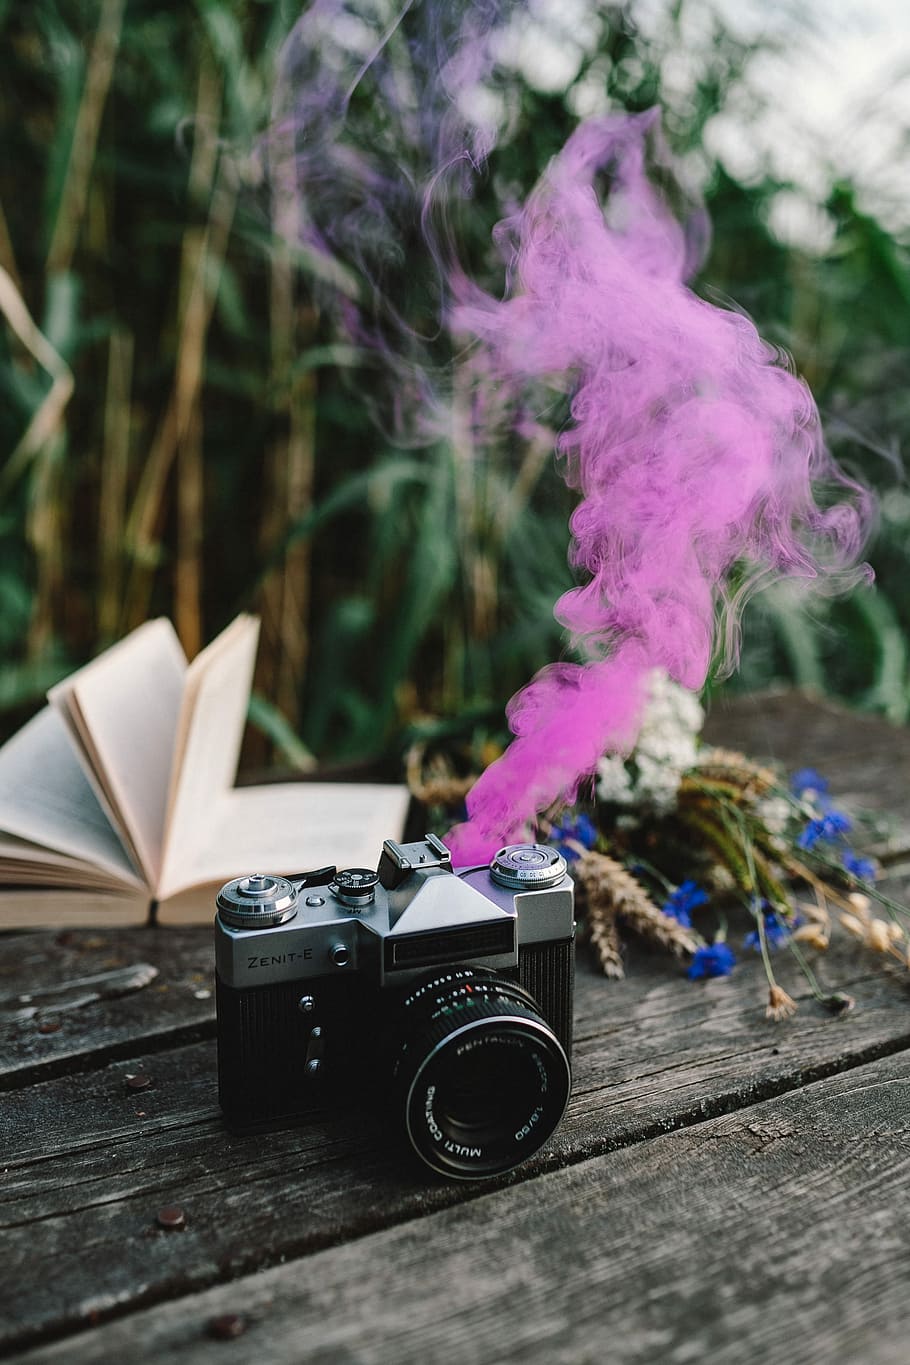 bomba de humo, libro, vintage, cámara, colorido, escritorio de madera, muelle de madera, diversión, humo colorido, al aire libre